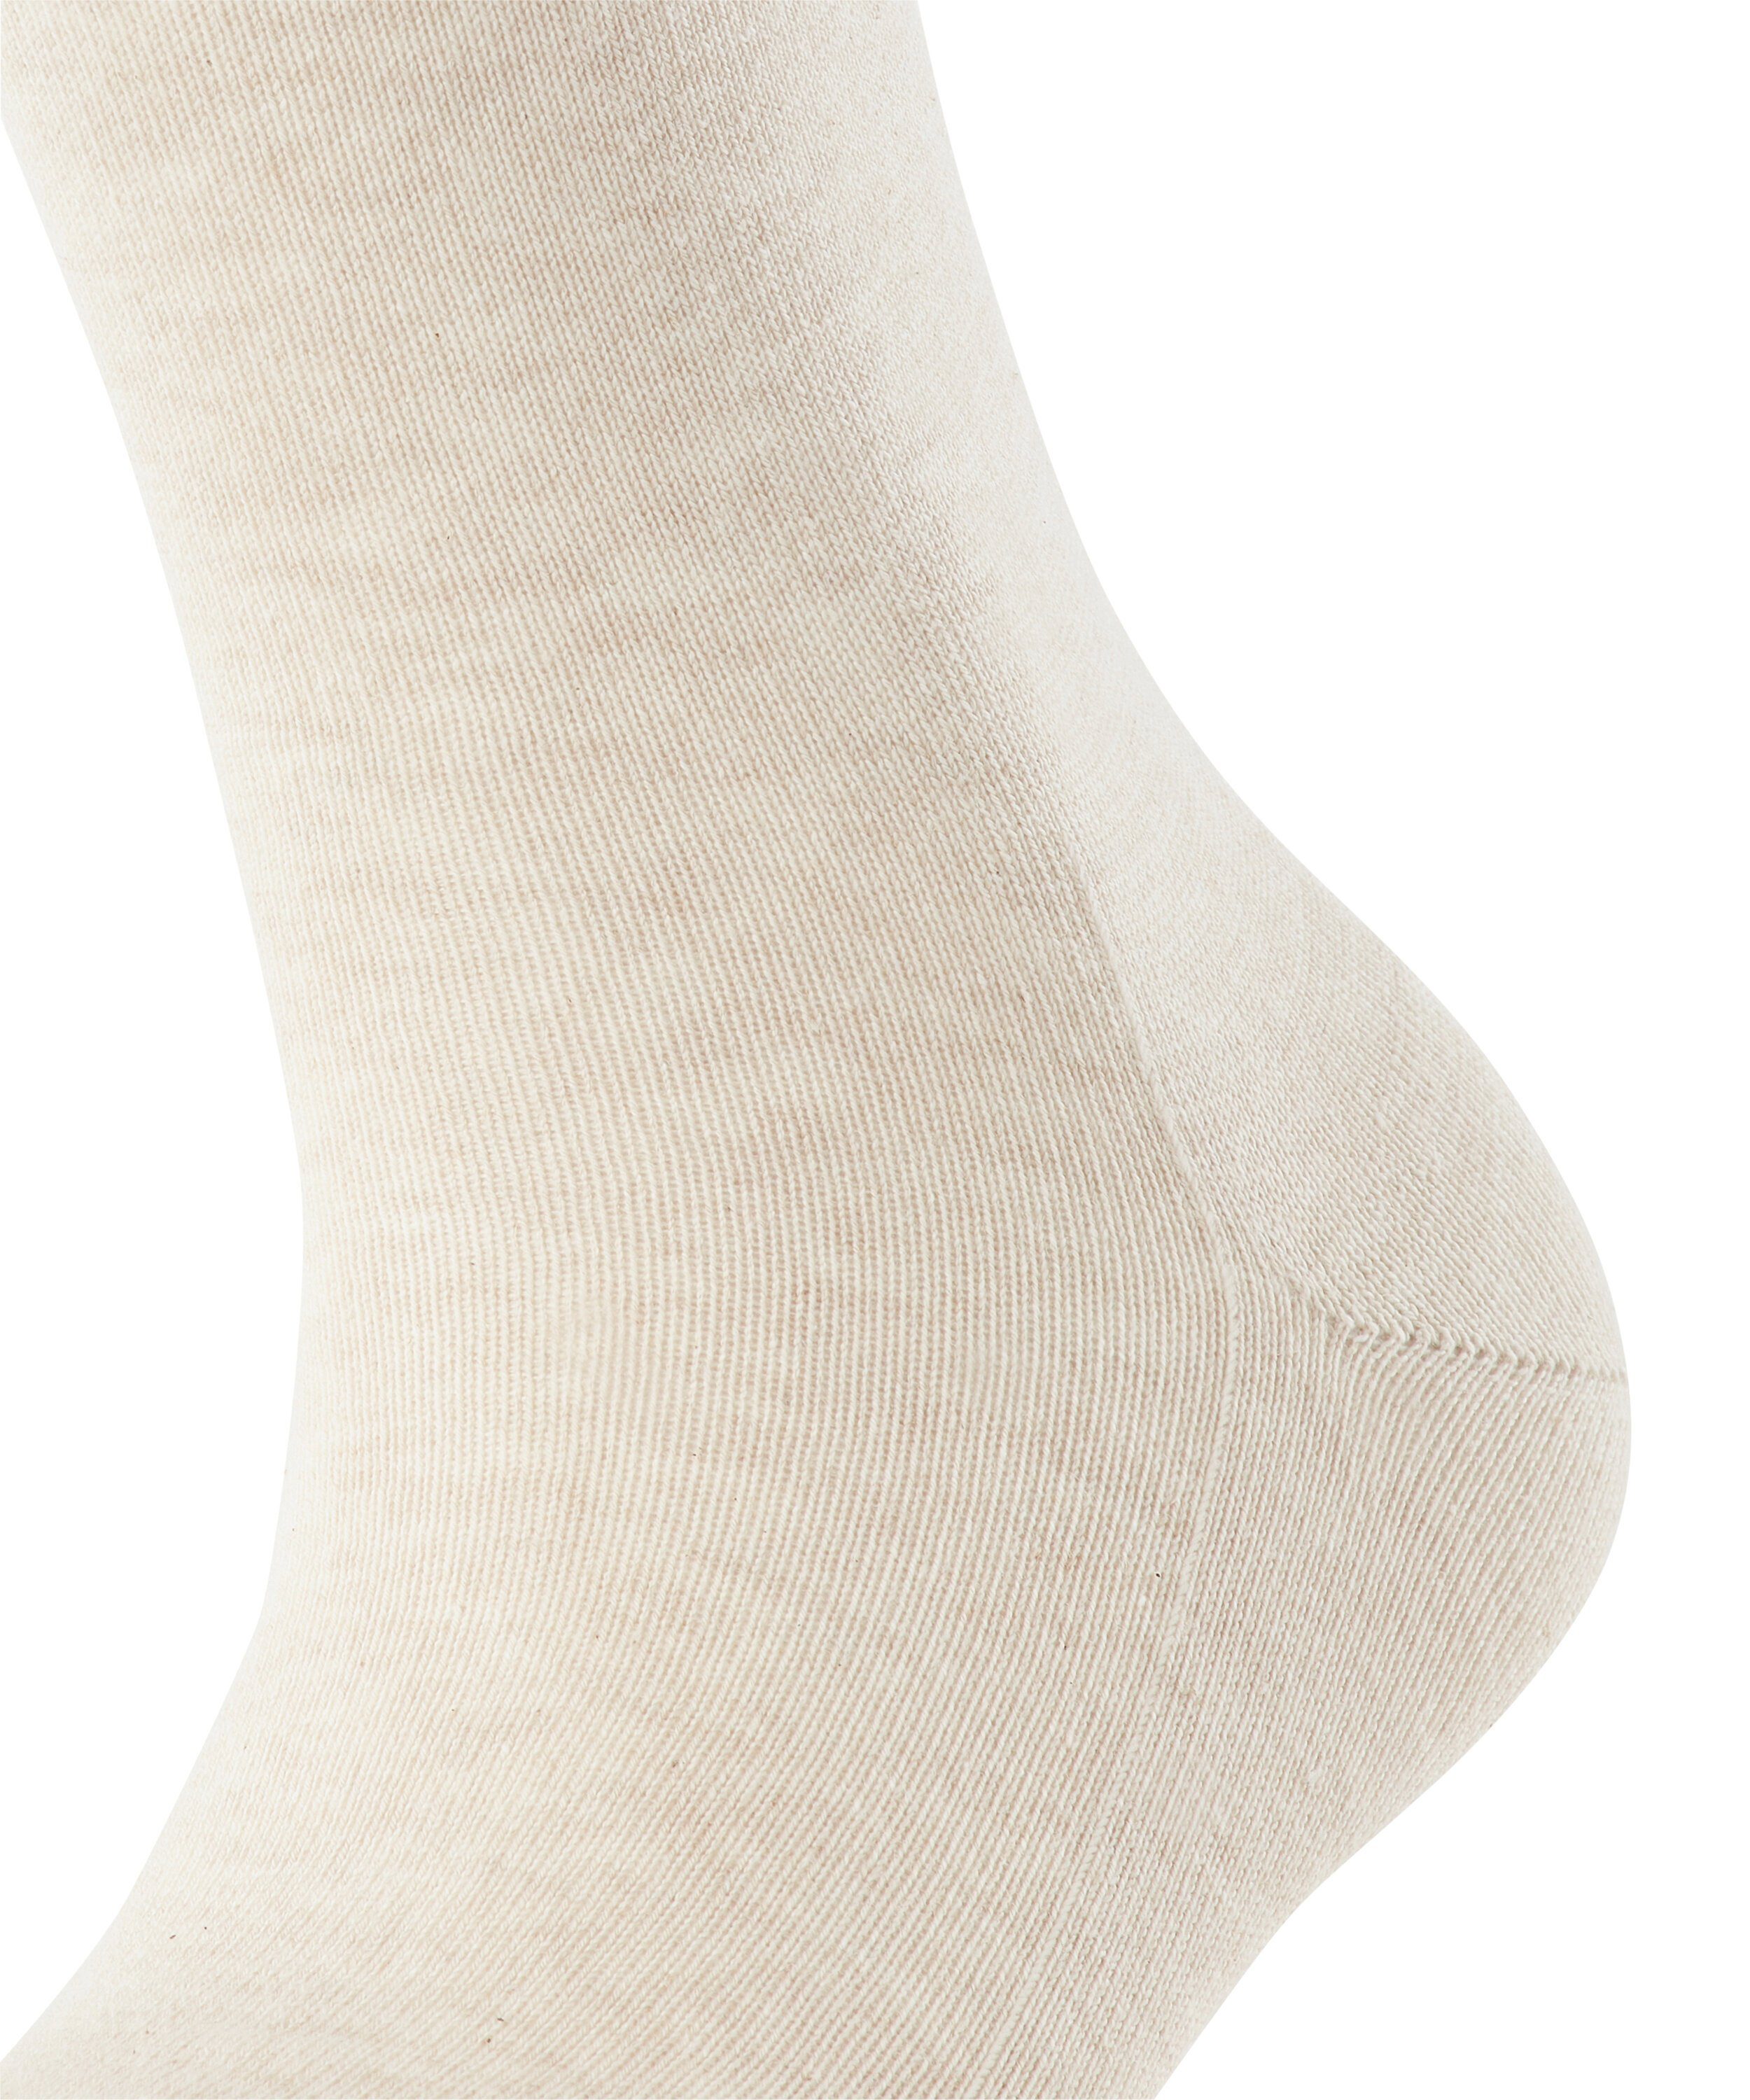 FALKE Socken Family sand mel. (4659) (1-Paar)